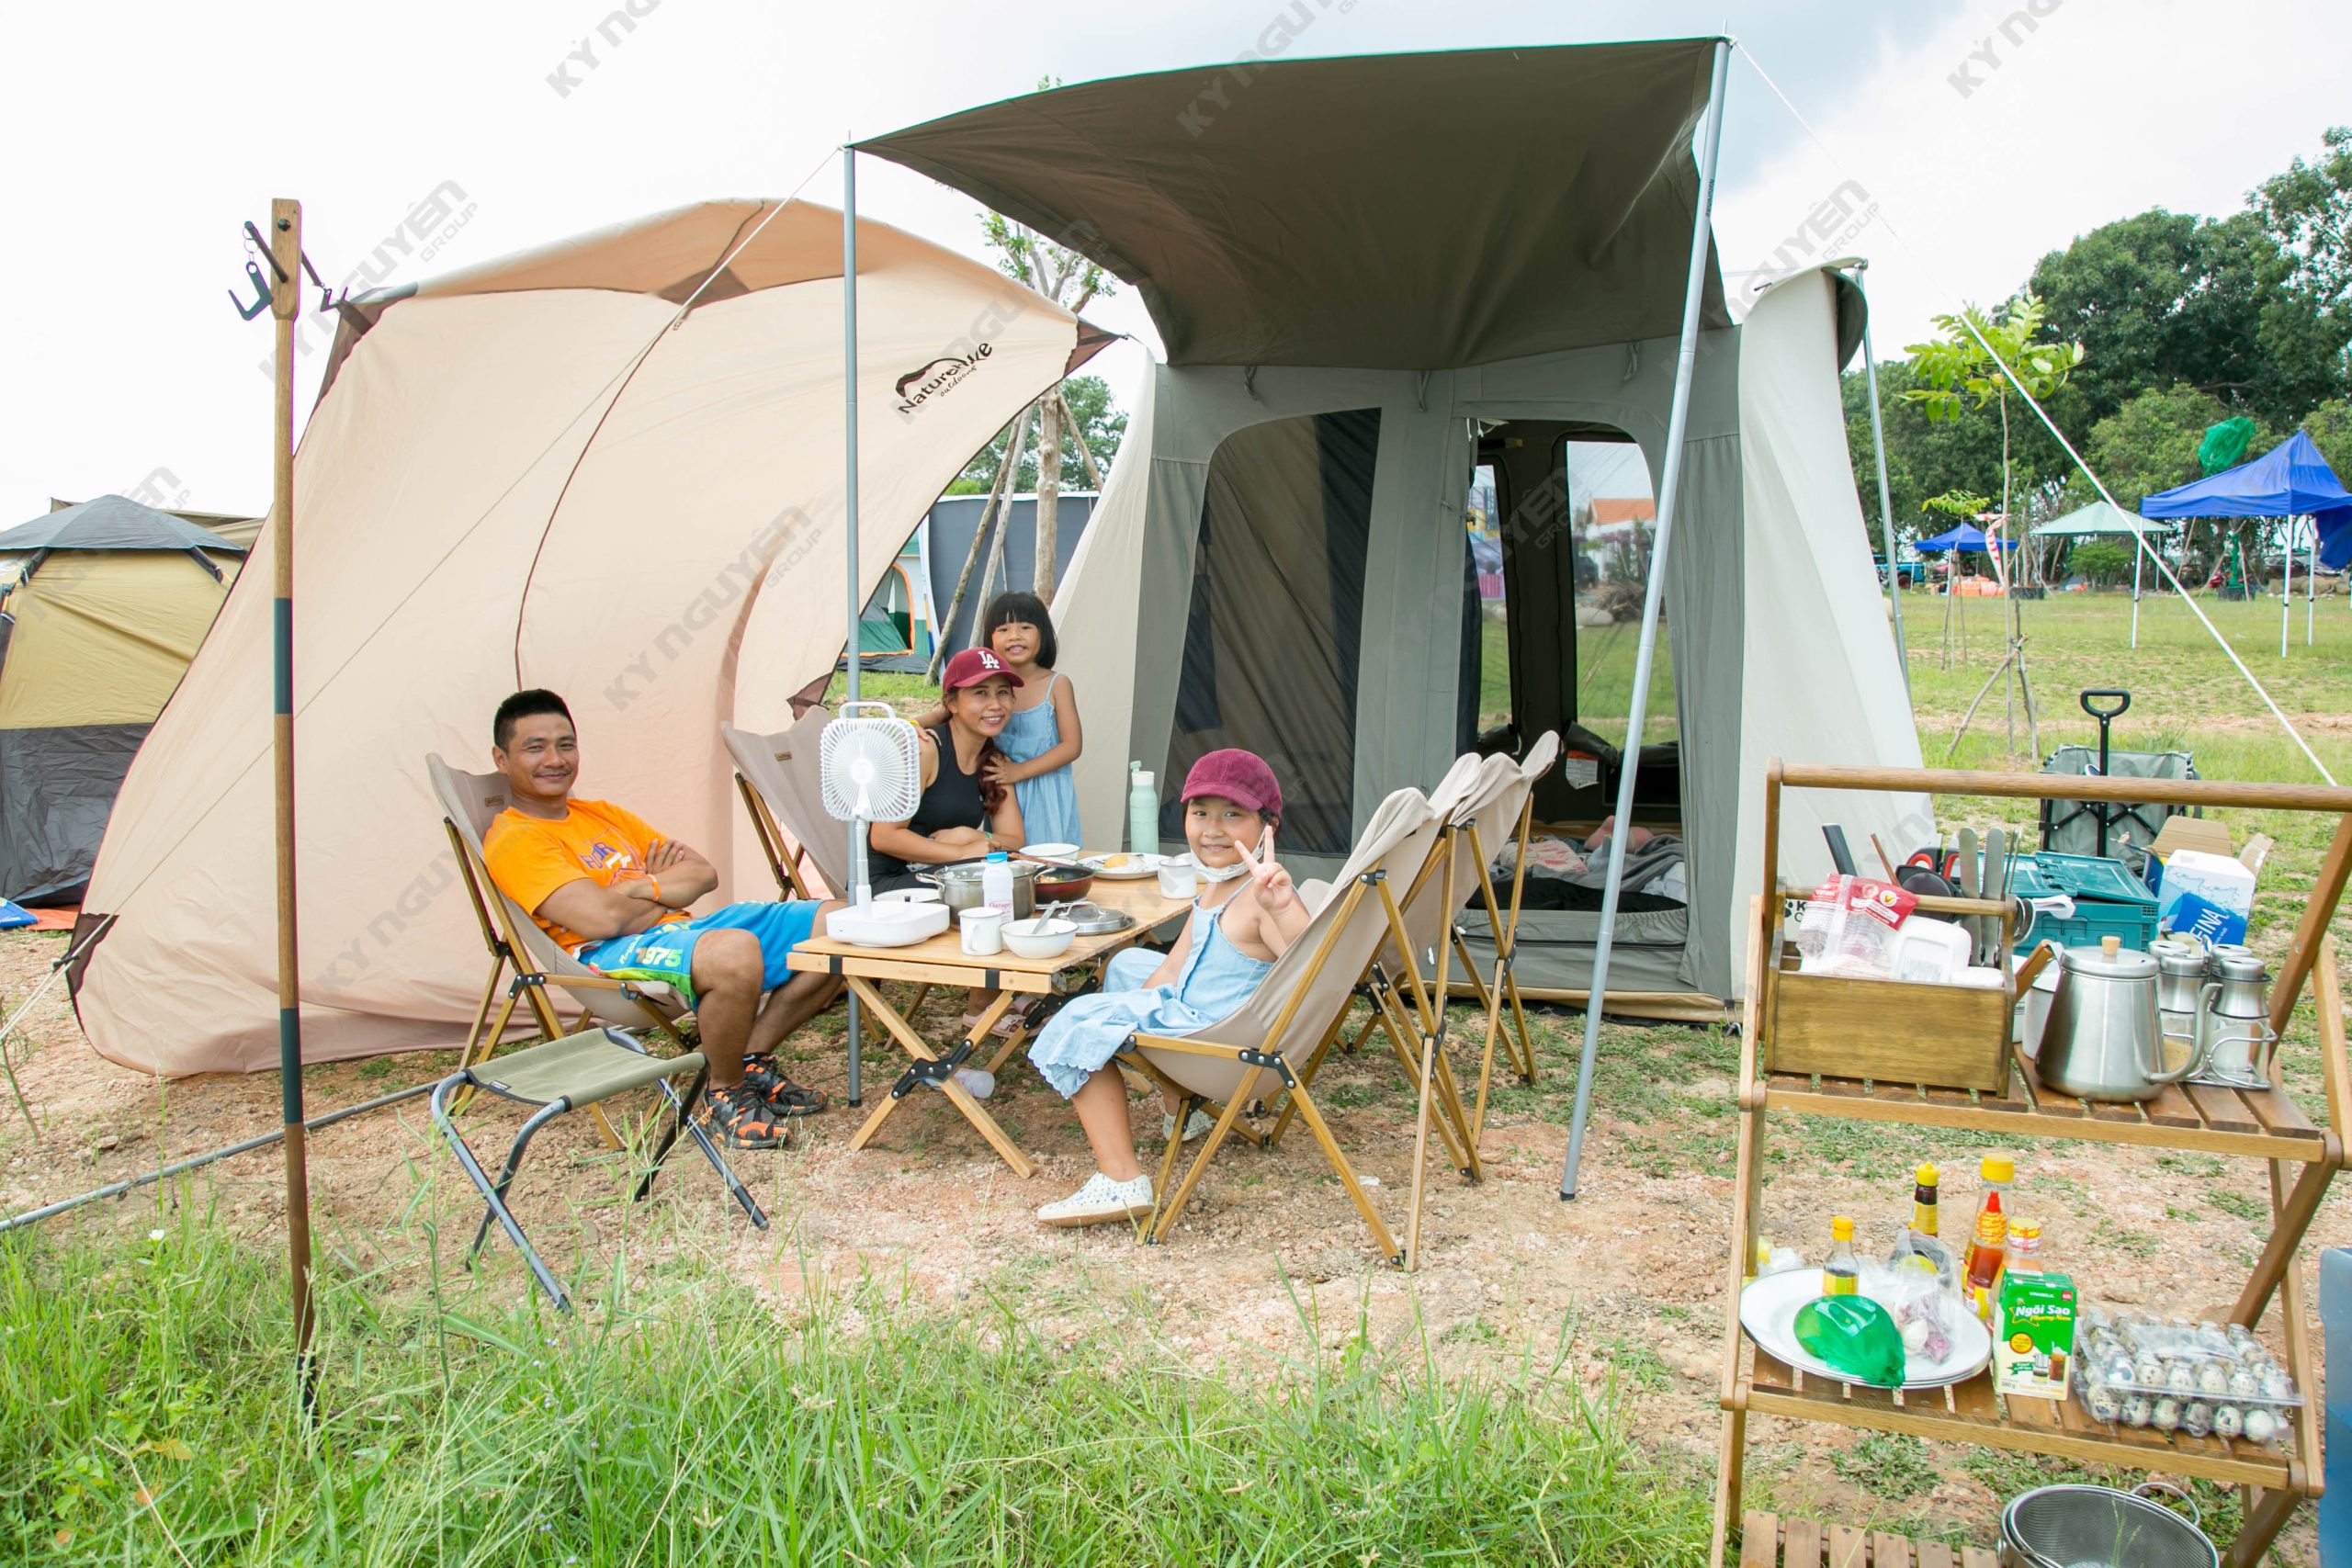 Cắm trại là một hoạt động tuyệt vời để cùng nhau giải trí, thư giãn